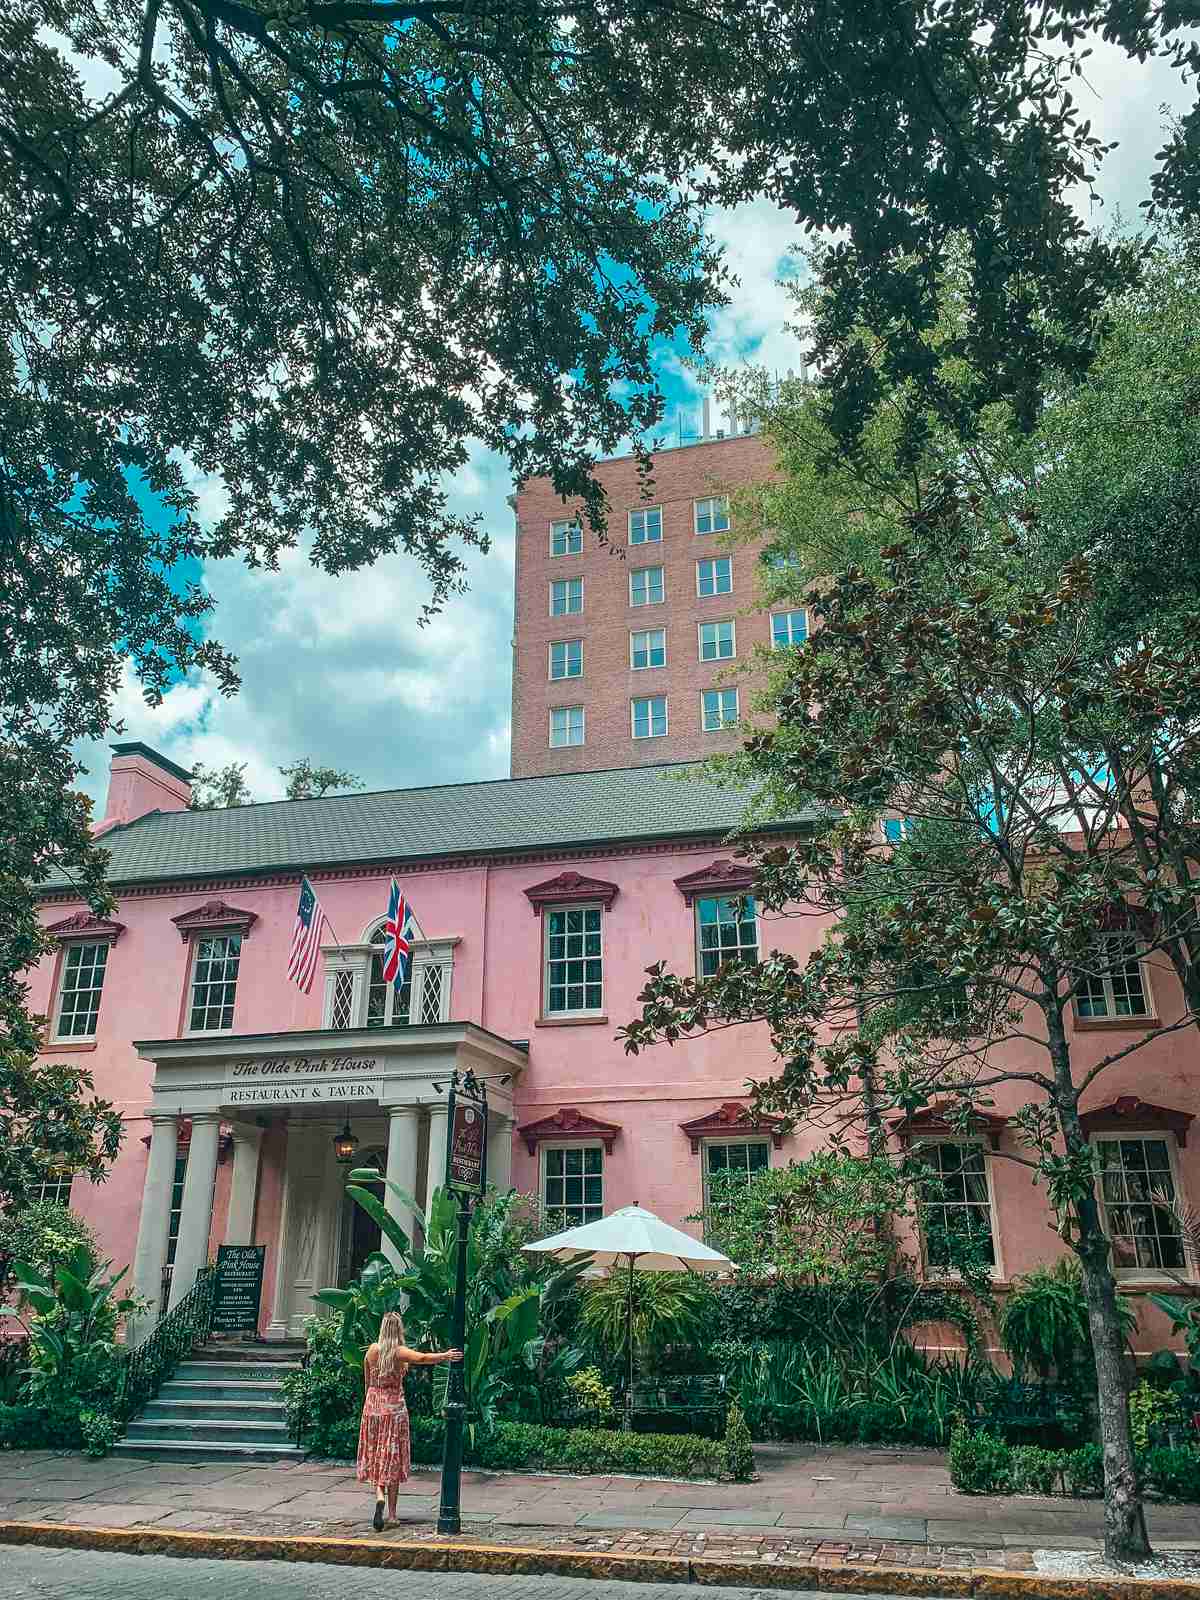 The Olde Pink House in Savannah Georgia